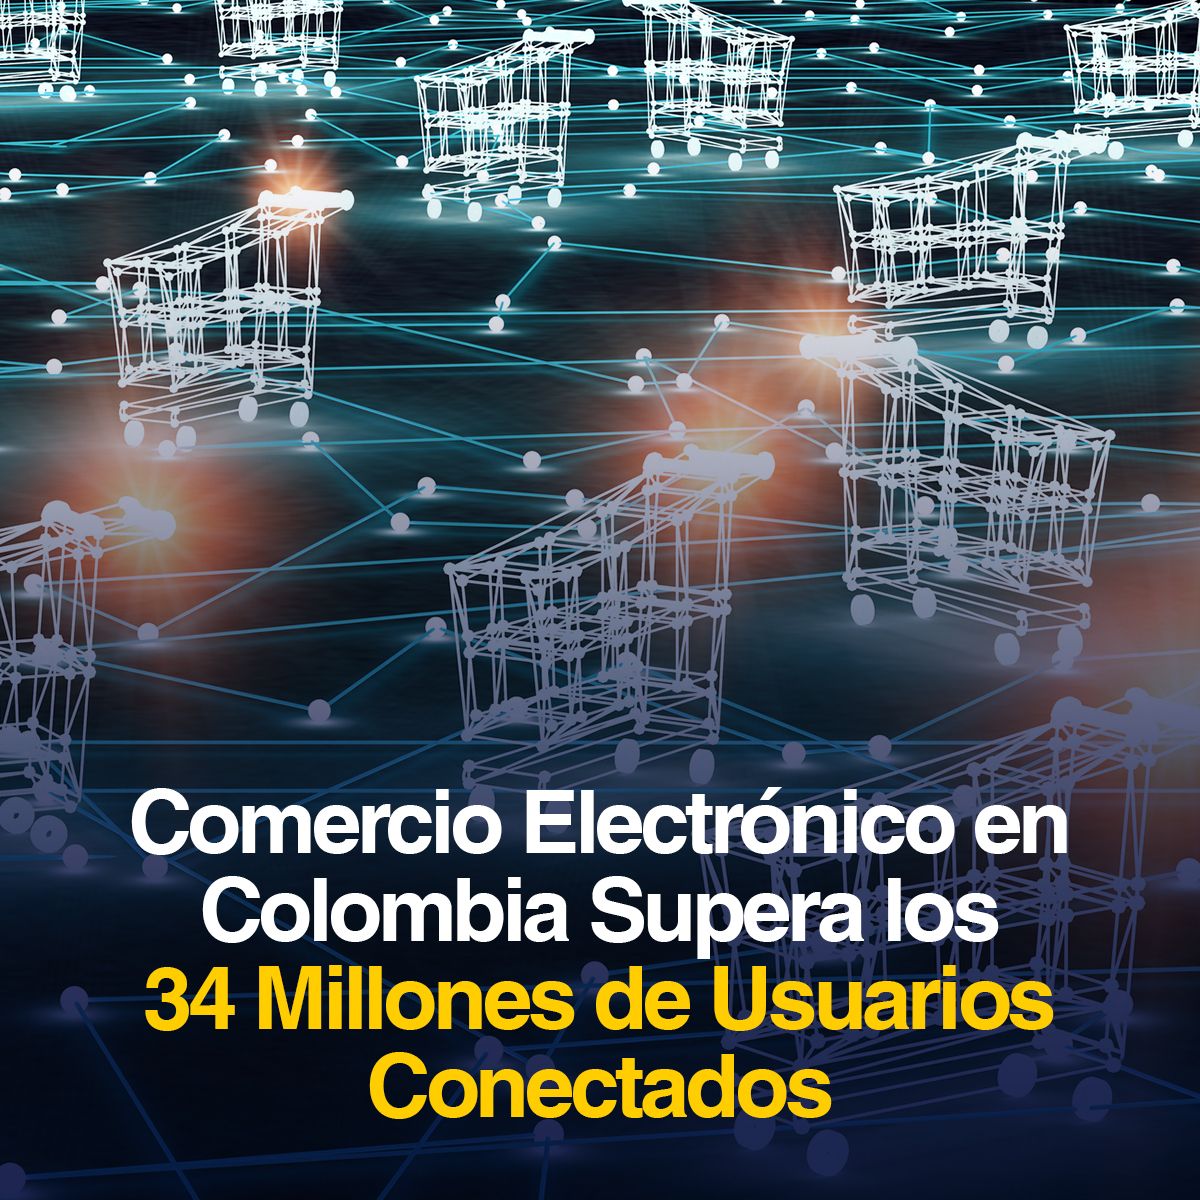 Comercio Electrónico en Colombia Supera los 34 Millones de Usuarios Conectados